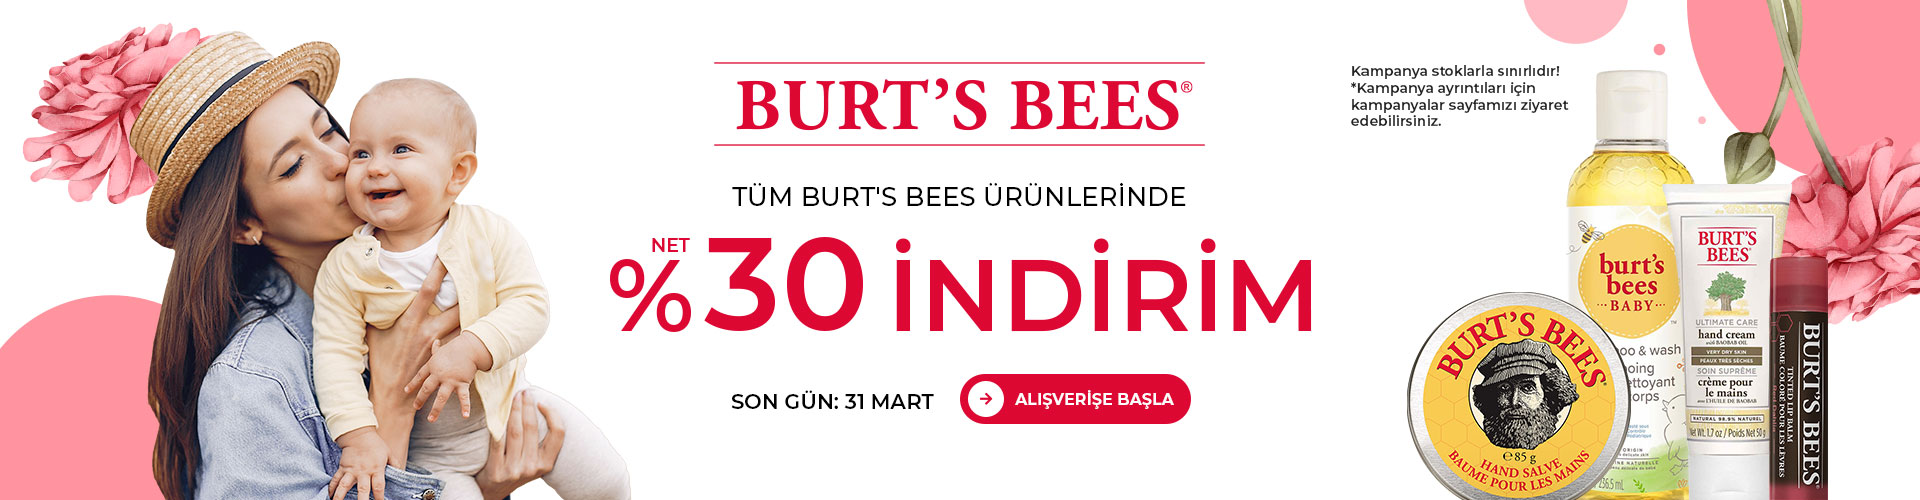 burts-bees-kampanya